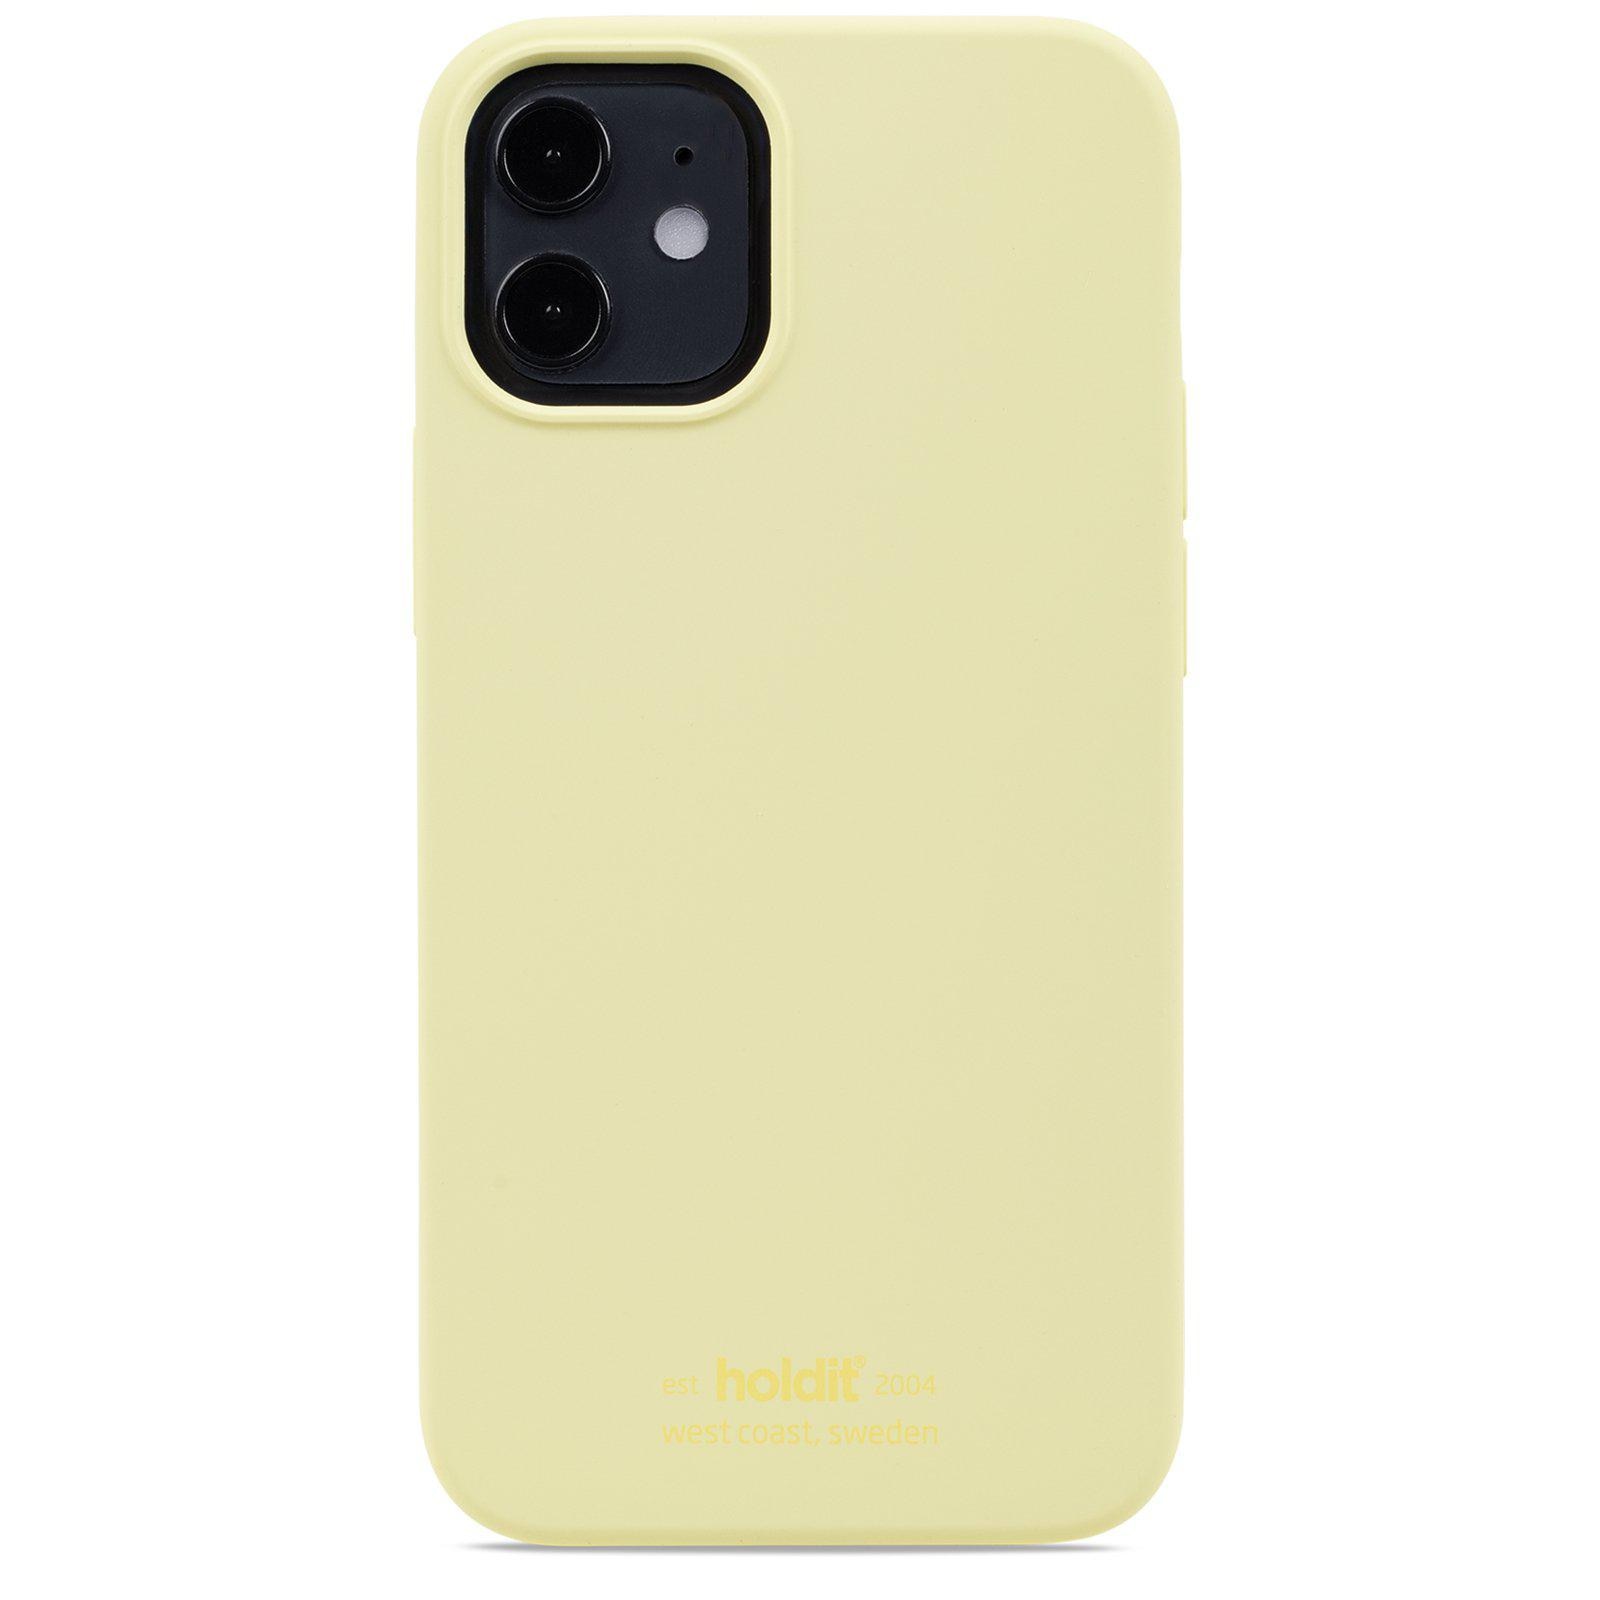 Silikonskal iPhone 12 Mini Lemonade